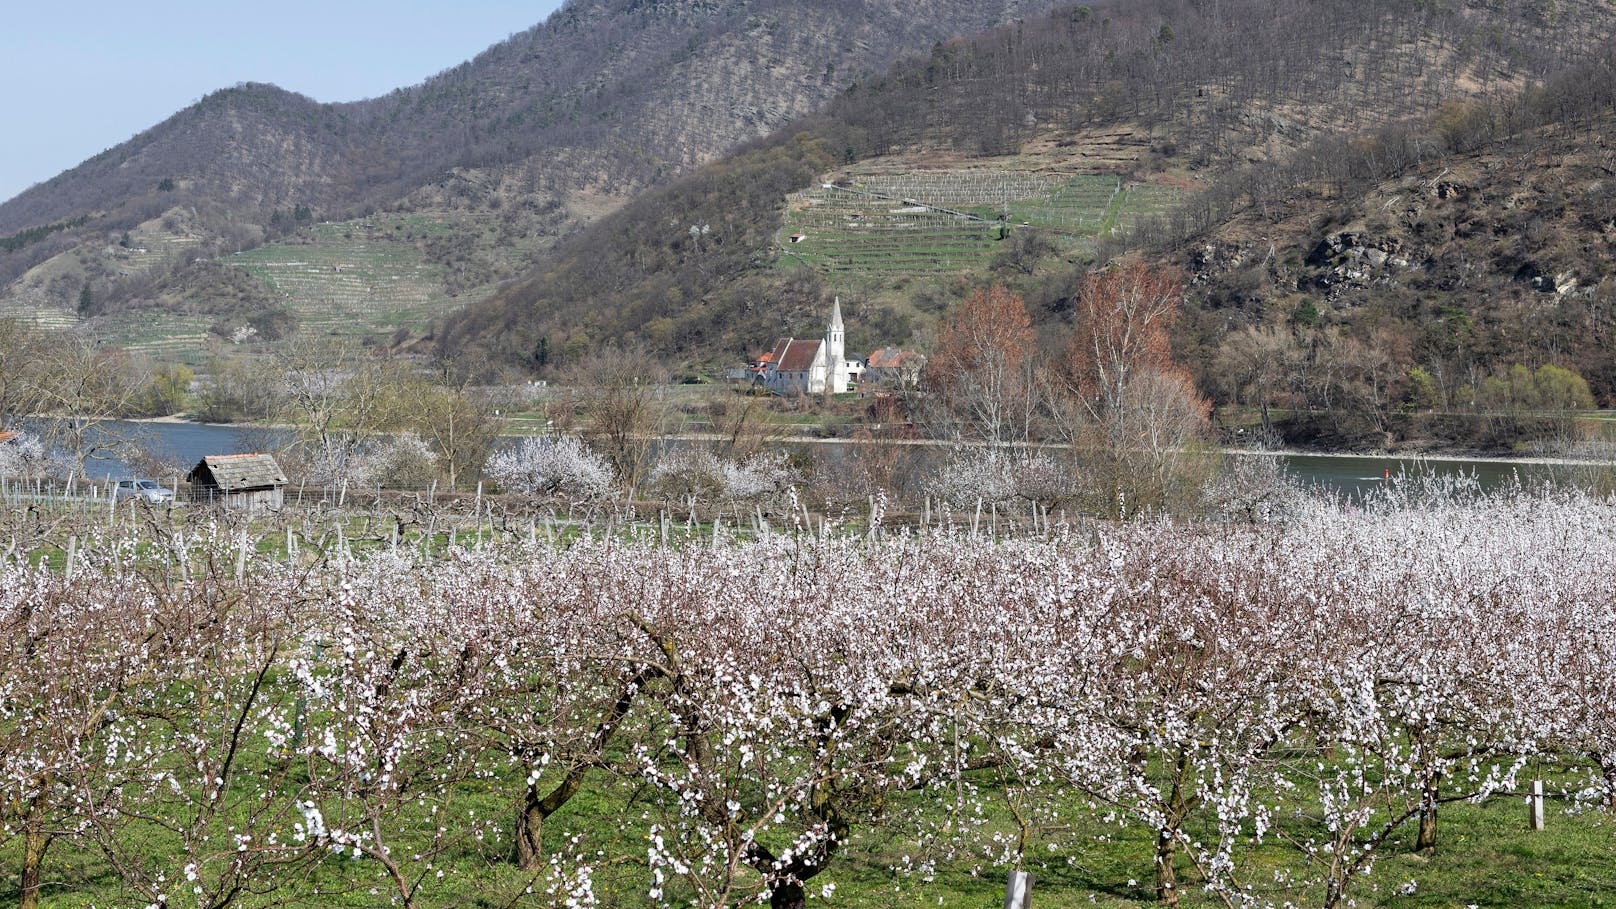 Jedes Jahr pilgern tausende Menschen in die Wachau, um die Marillenblüte zu sehen.